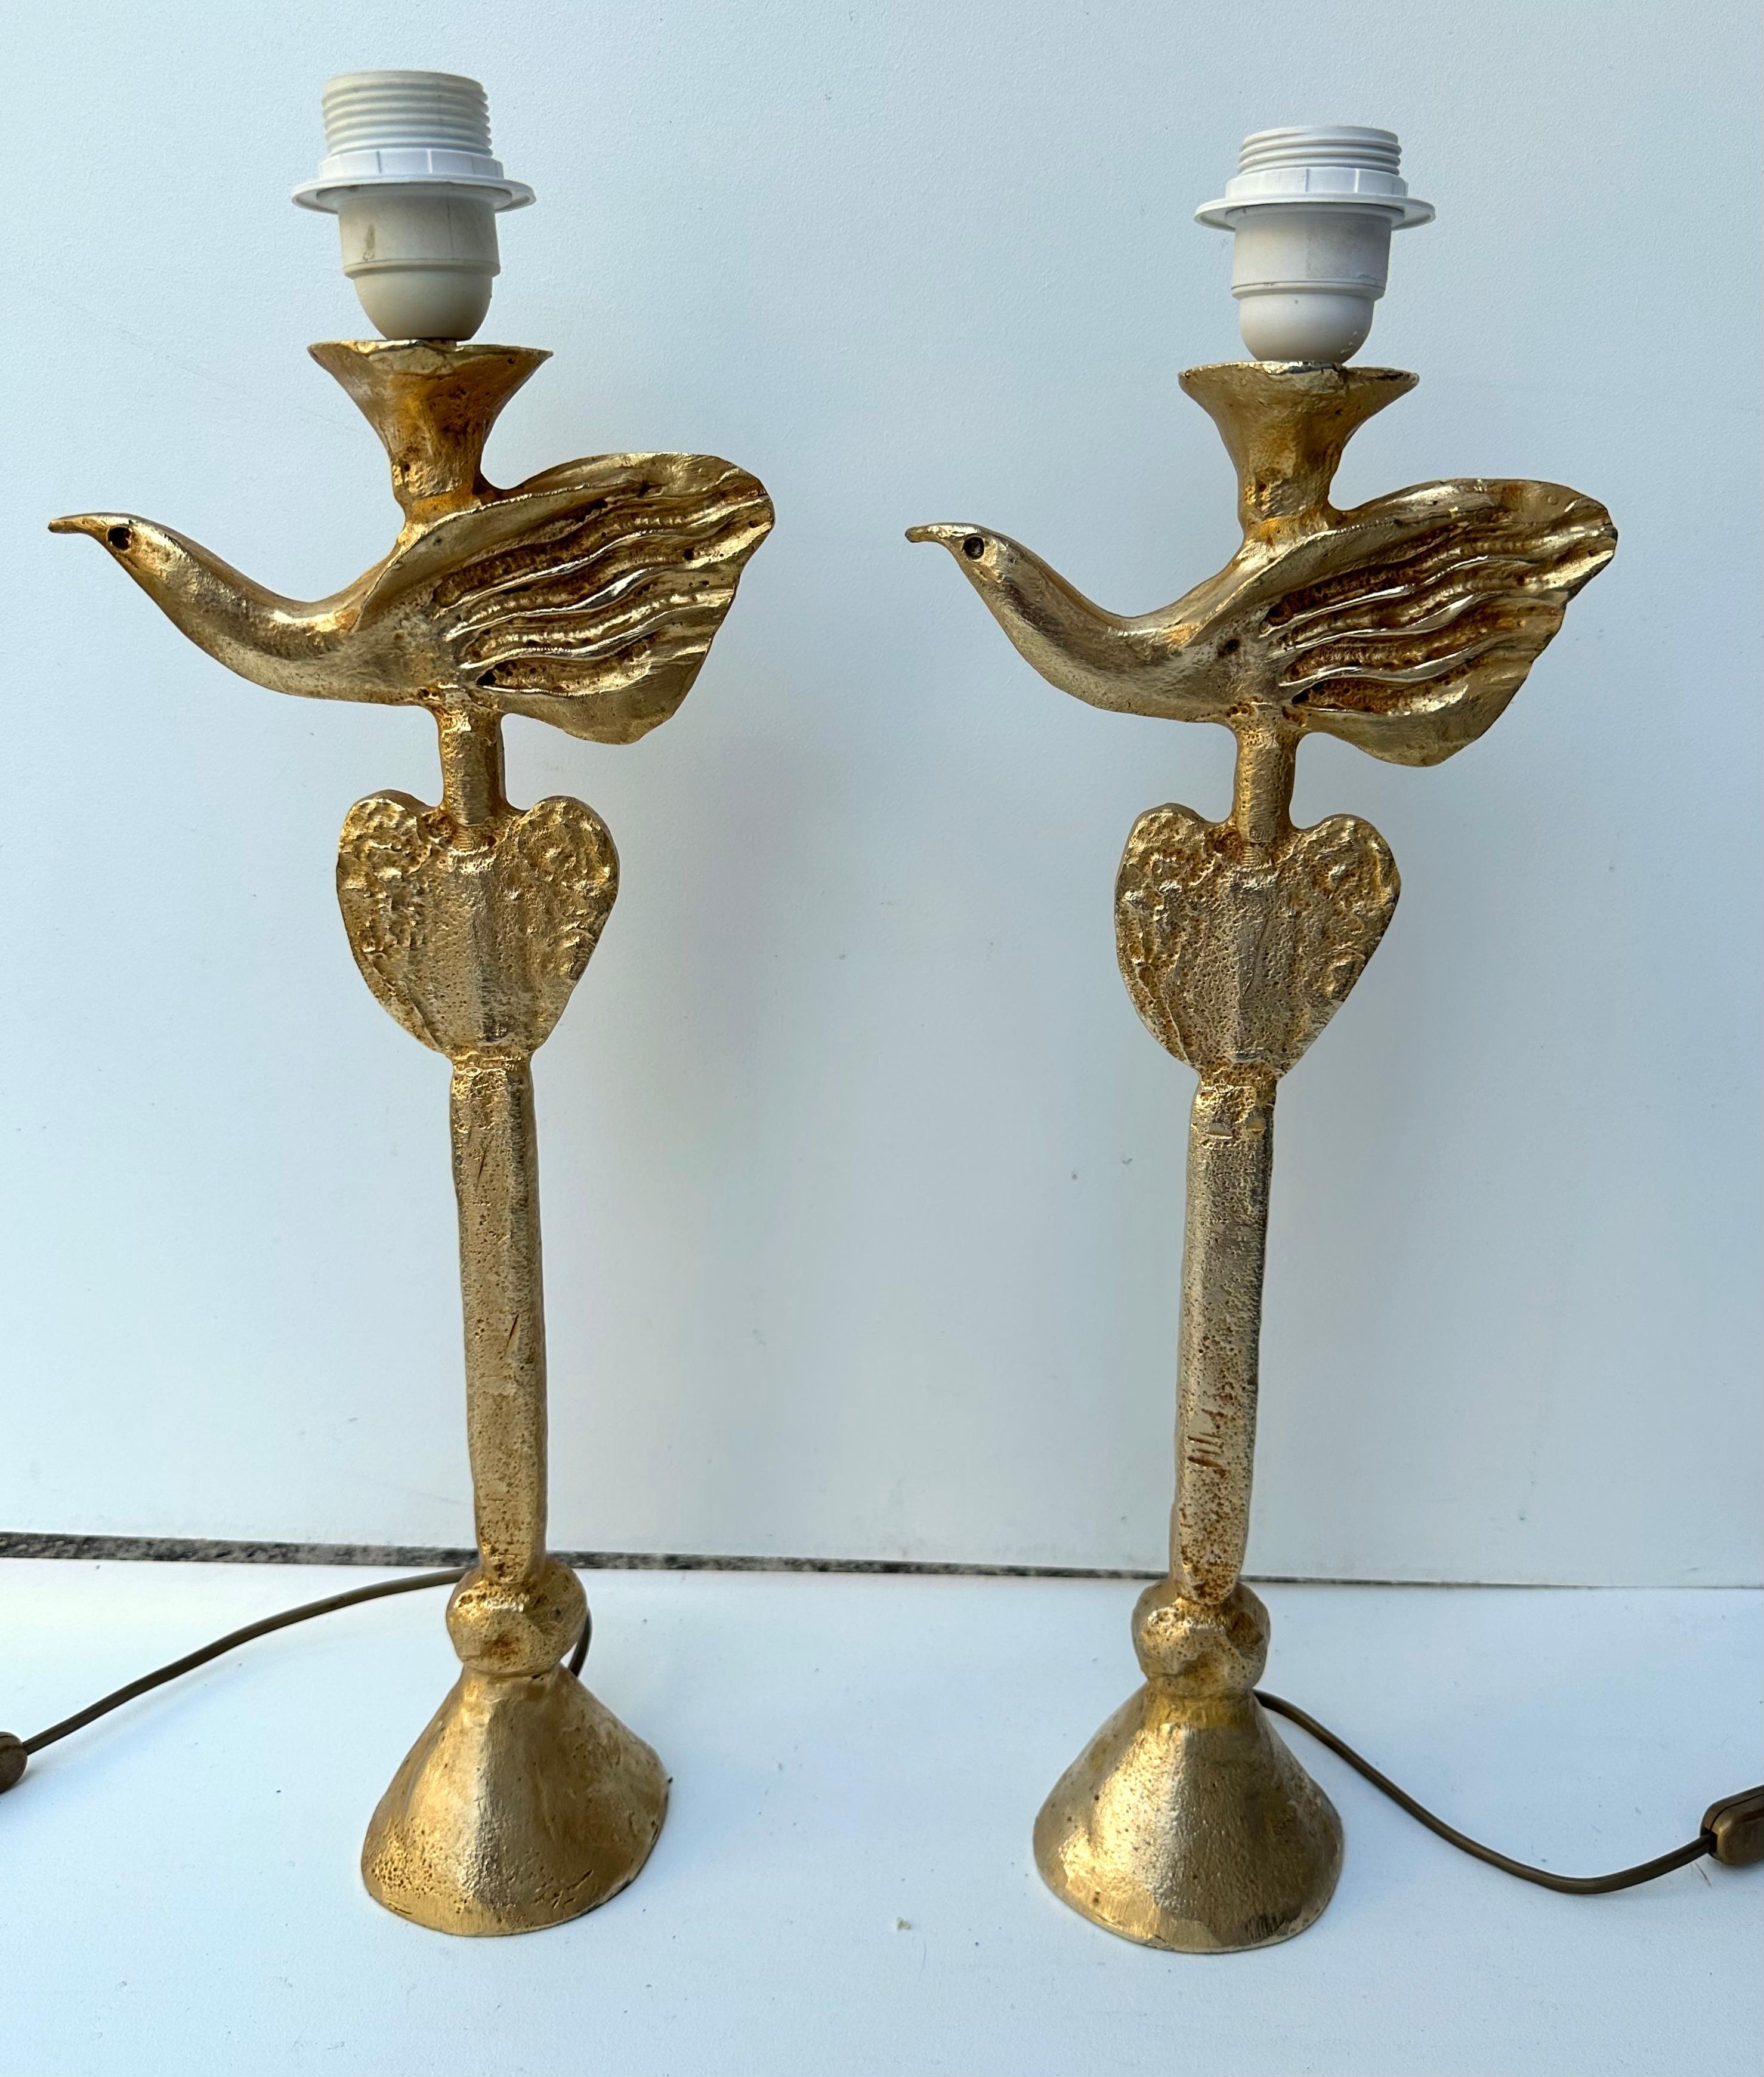 Seltenes Paar Tisch- oder Nachttischlampen mit Vogel und Herz aus vergoldetem Metall, im Bronzestil von Pierre Casenove für Fondica. Unterschreiben Sie Casenove und stempeln Sie Fondica auf dem Sockel. Berühmte Künstler, die für die Manufaktur